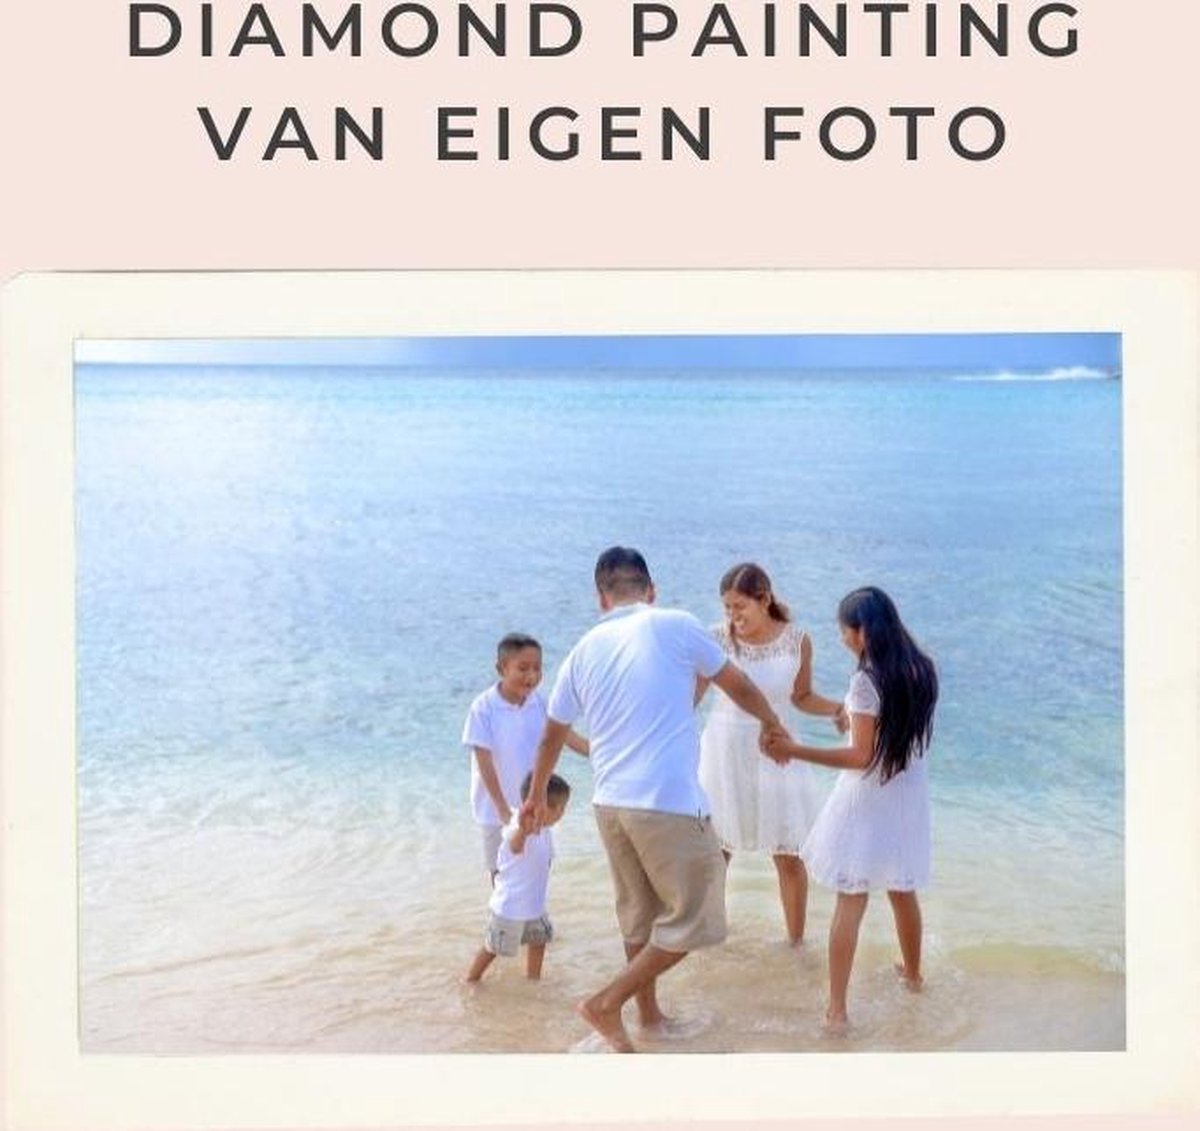 Diamond painting eigen foto - Geproduceerd in Nederland - 60 x 90 cm - dibond materiaal - vierkante steentjes - Binnen 2-3 werkdagen in huis